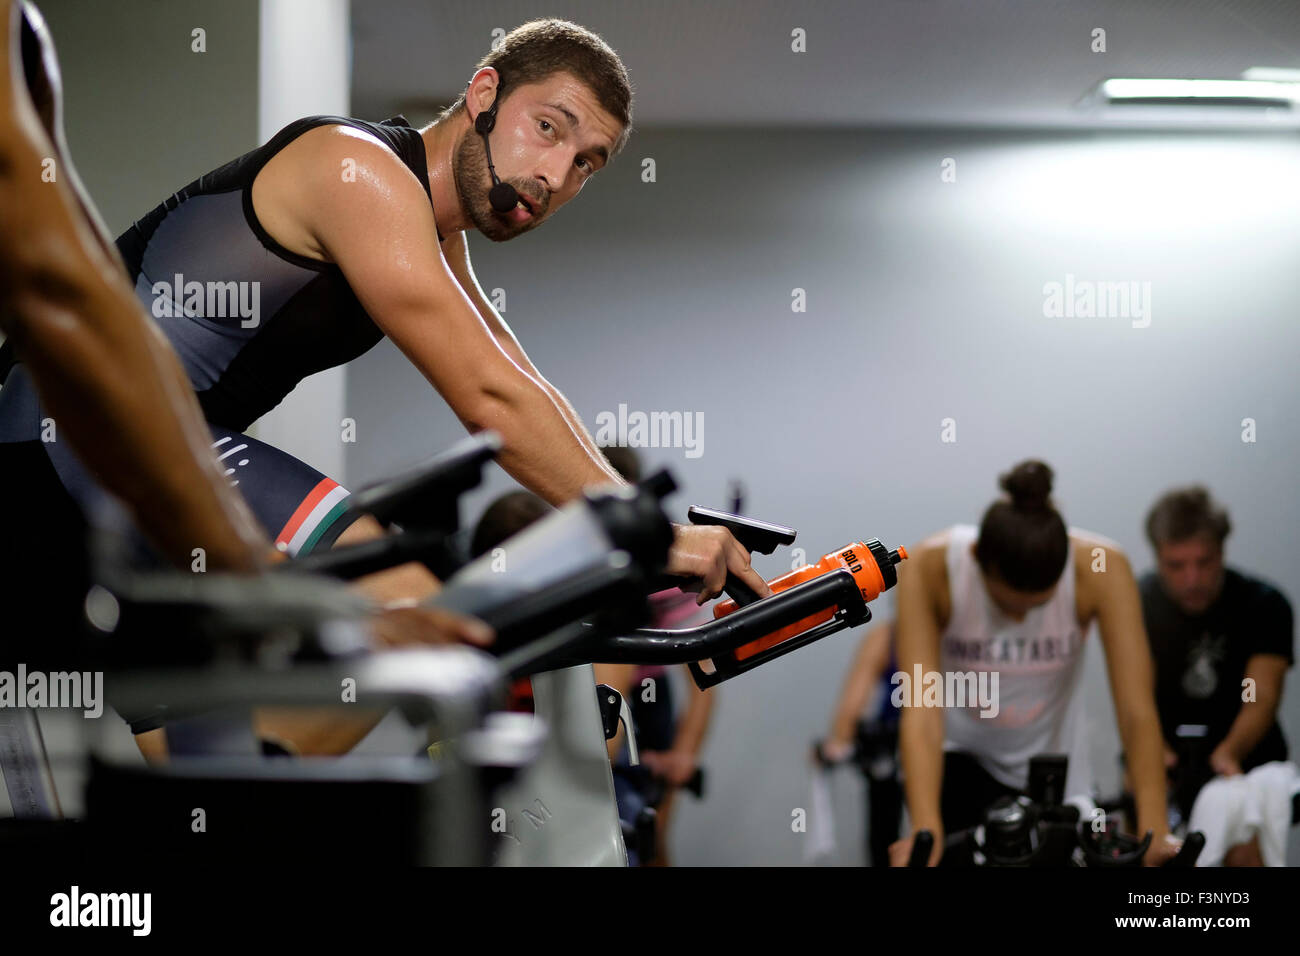 Fitness-Trainer vor Menschen auf stationären Fahrrädern während einem Spinning Kurs in der Turnhalle Stockfoto